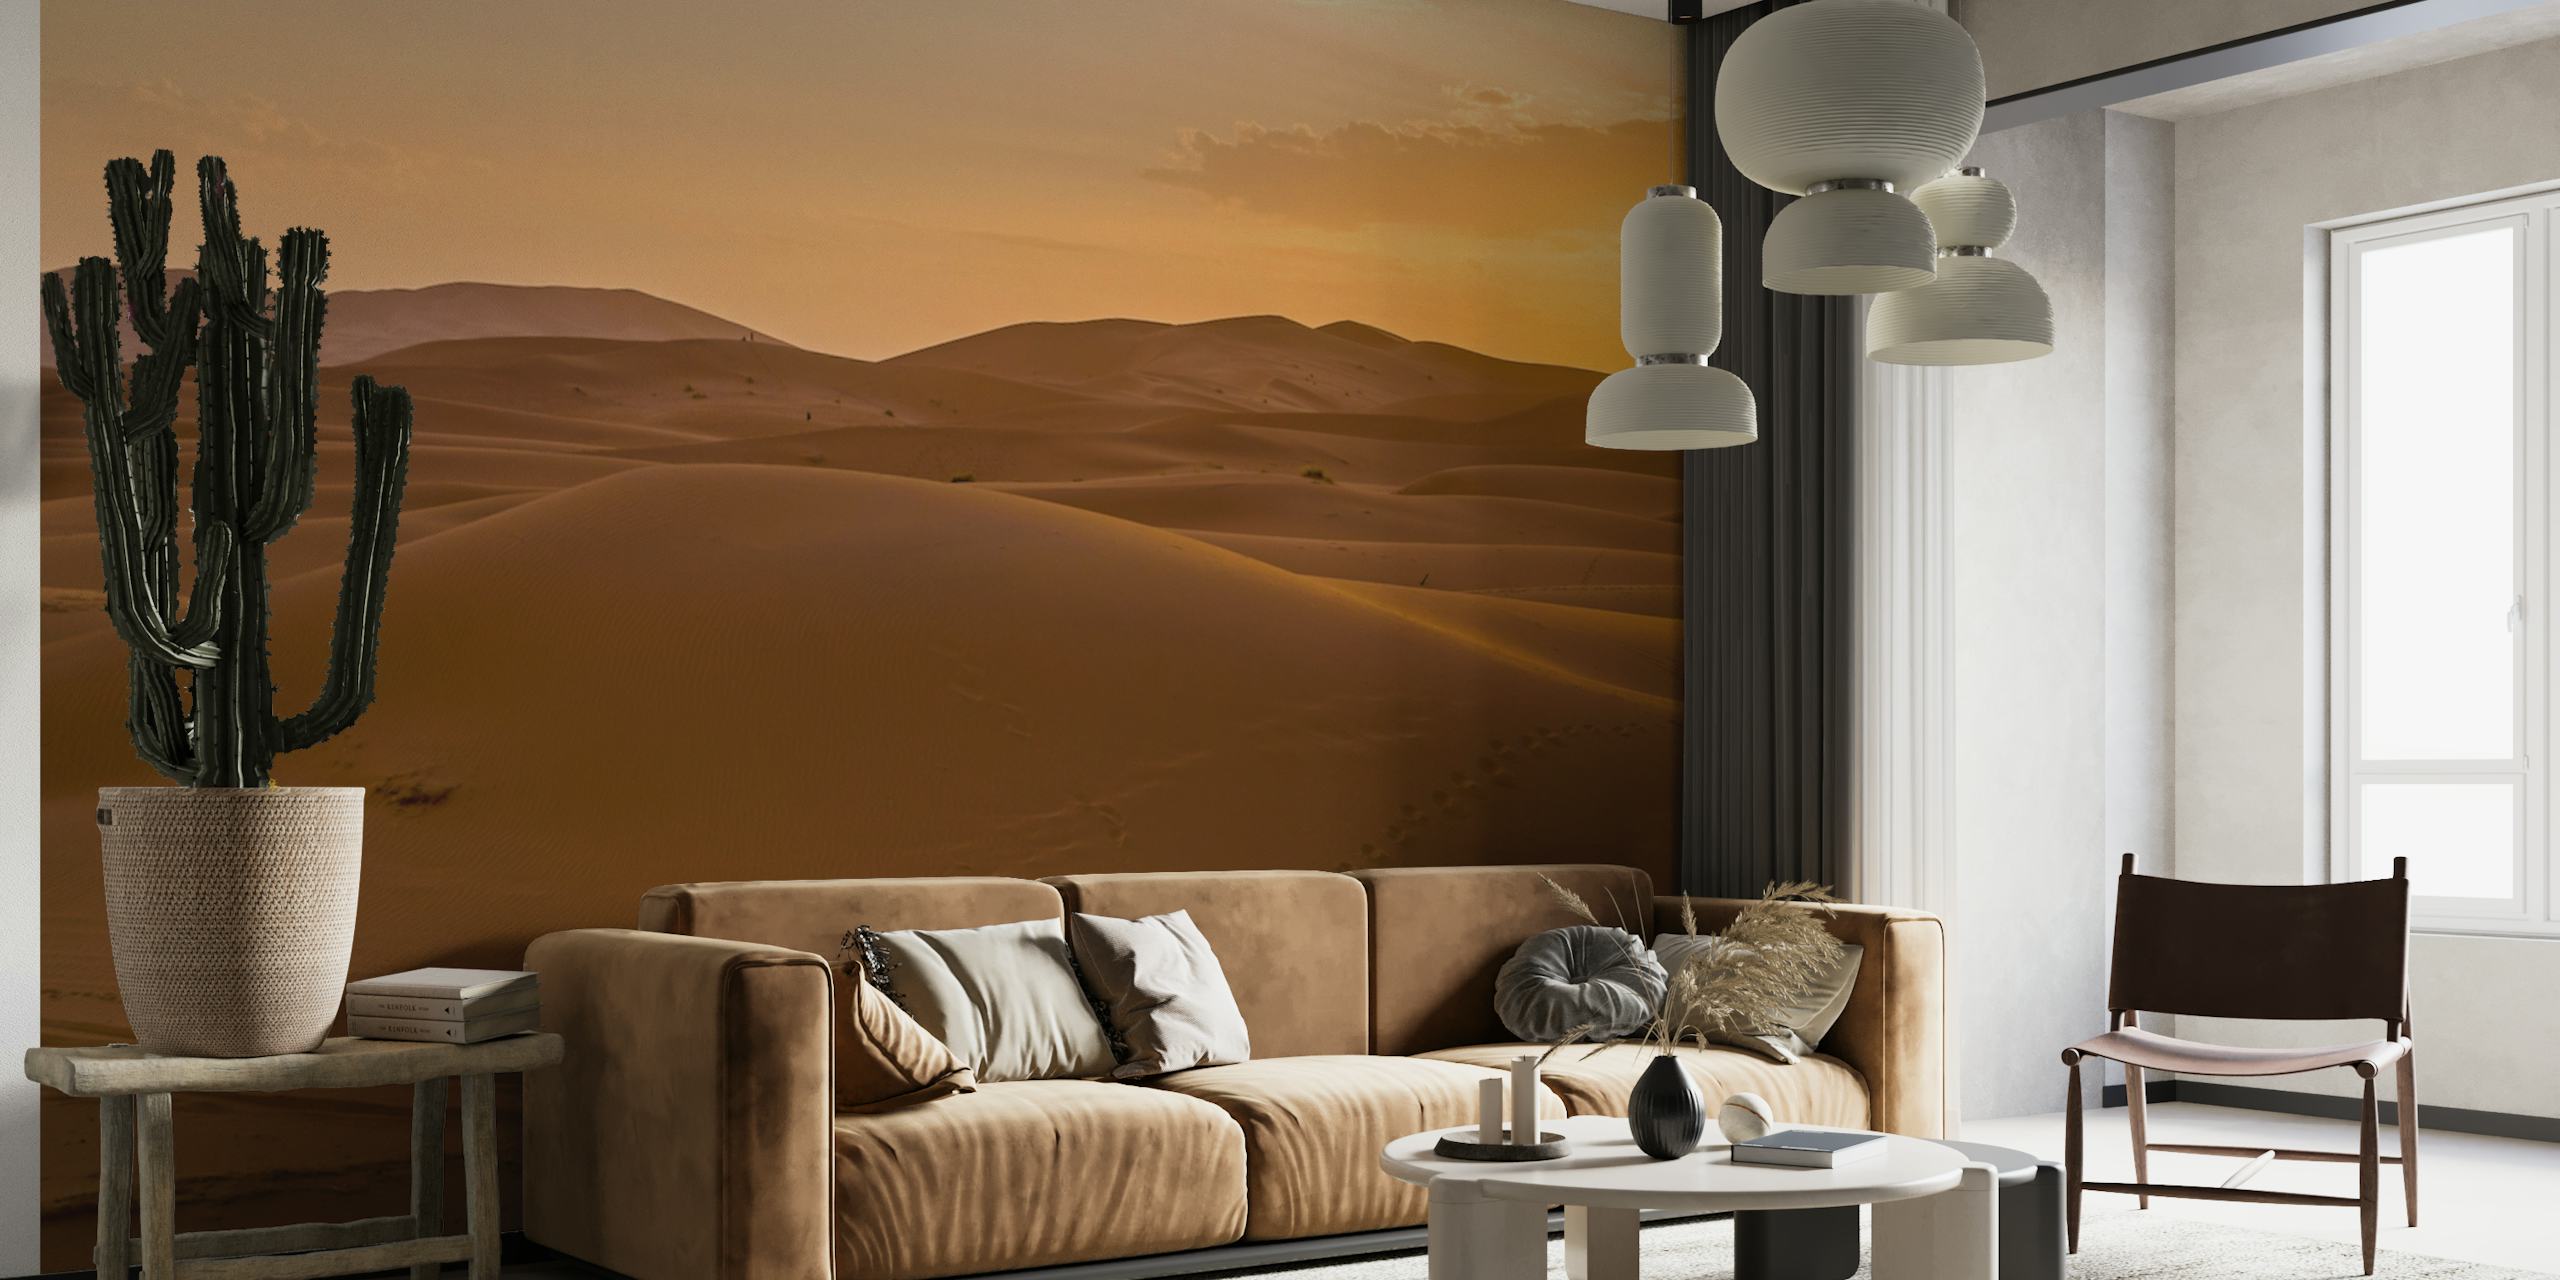 Coucher de soleil doré sur des dunes de sable vallonnées dans une stickers murale du désert marocain